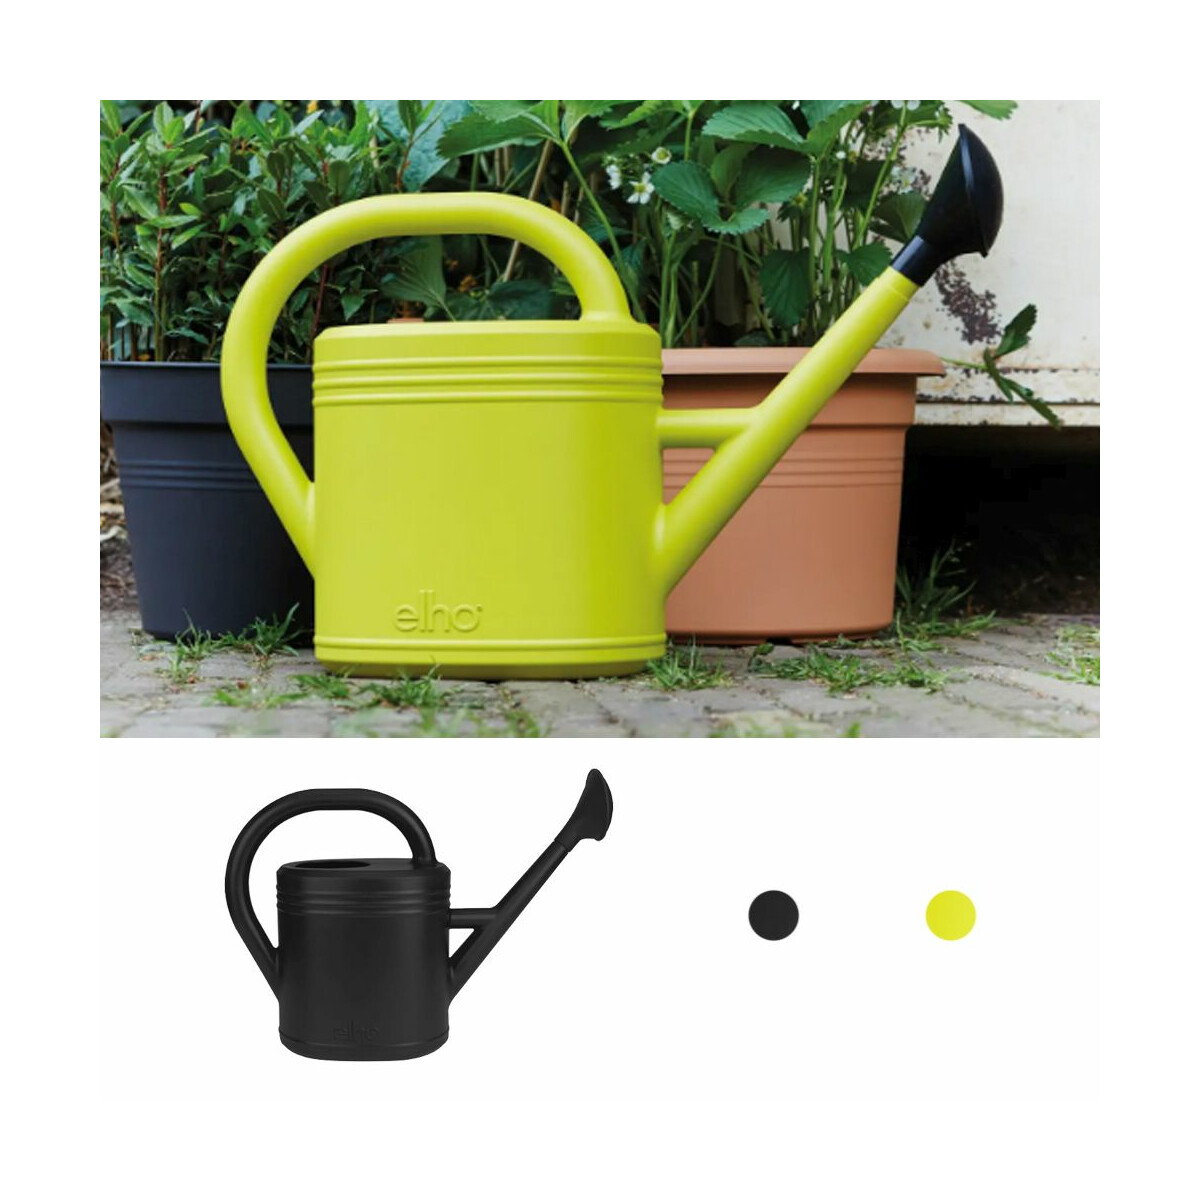 Giesskanne 10 Liter für Garten- unsere Zink Gießkanne 10l ist ideal zum  Gießen oder als Vintage Deko. Die verzinkte Gießkanne eignet sich perfekt  für Arbeiten im Freien, ergonomischer und großer Griff: 